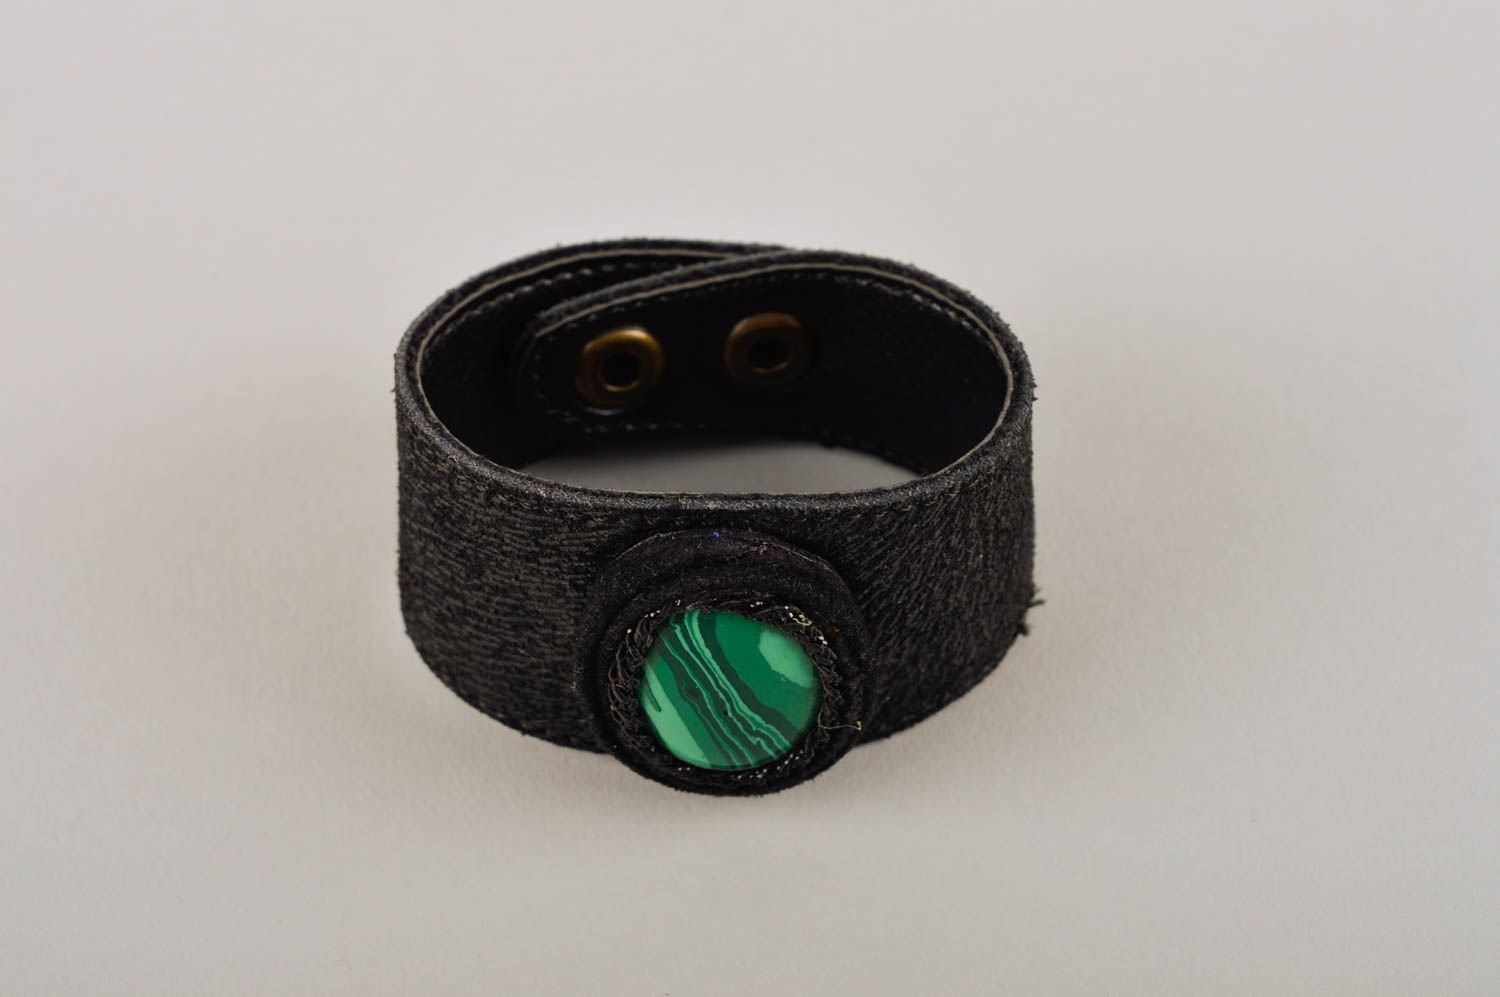 Stylish handmade leather bracelet wrist bracelet designs fashion tips gift ideas photo 2